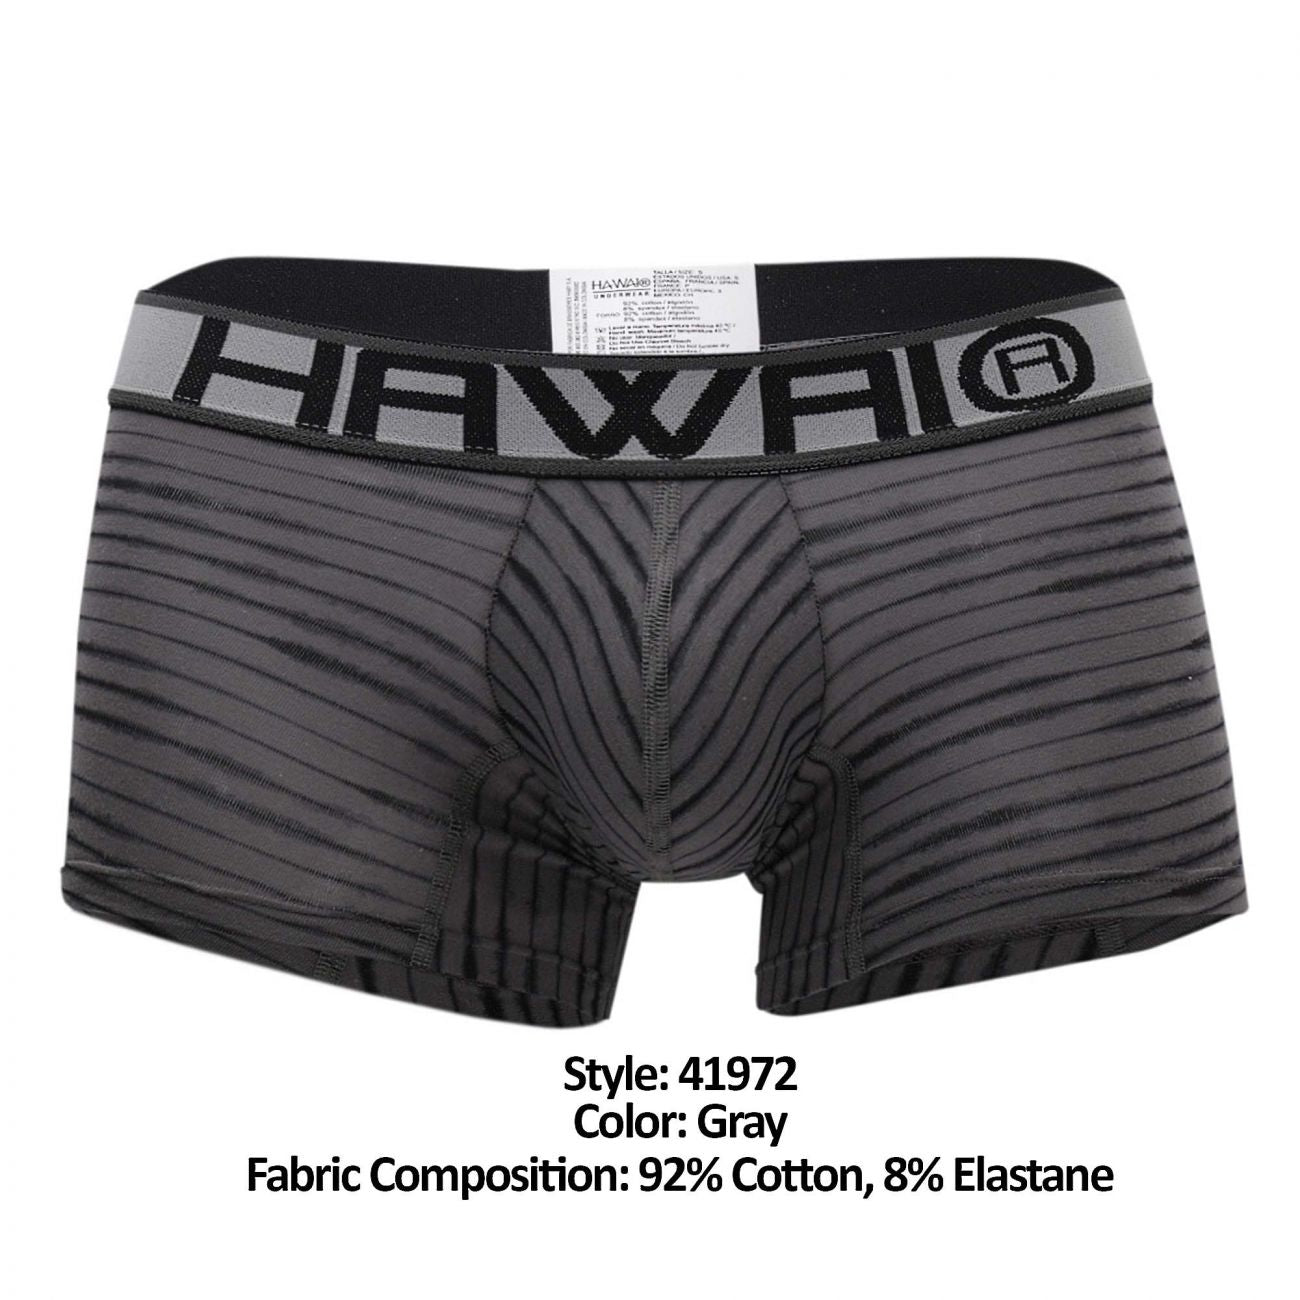 HAWAI 41972 Boxer Briefs Gray